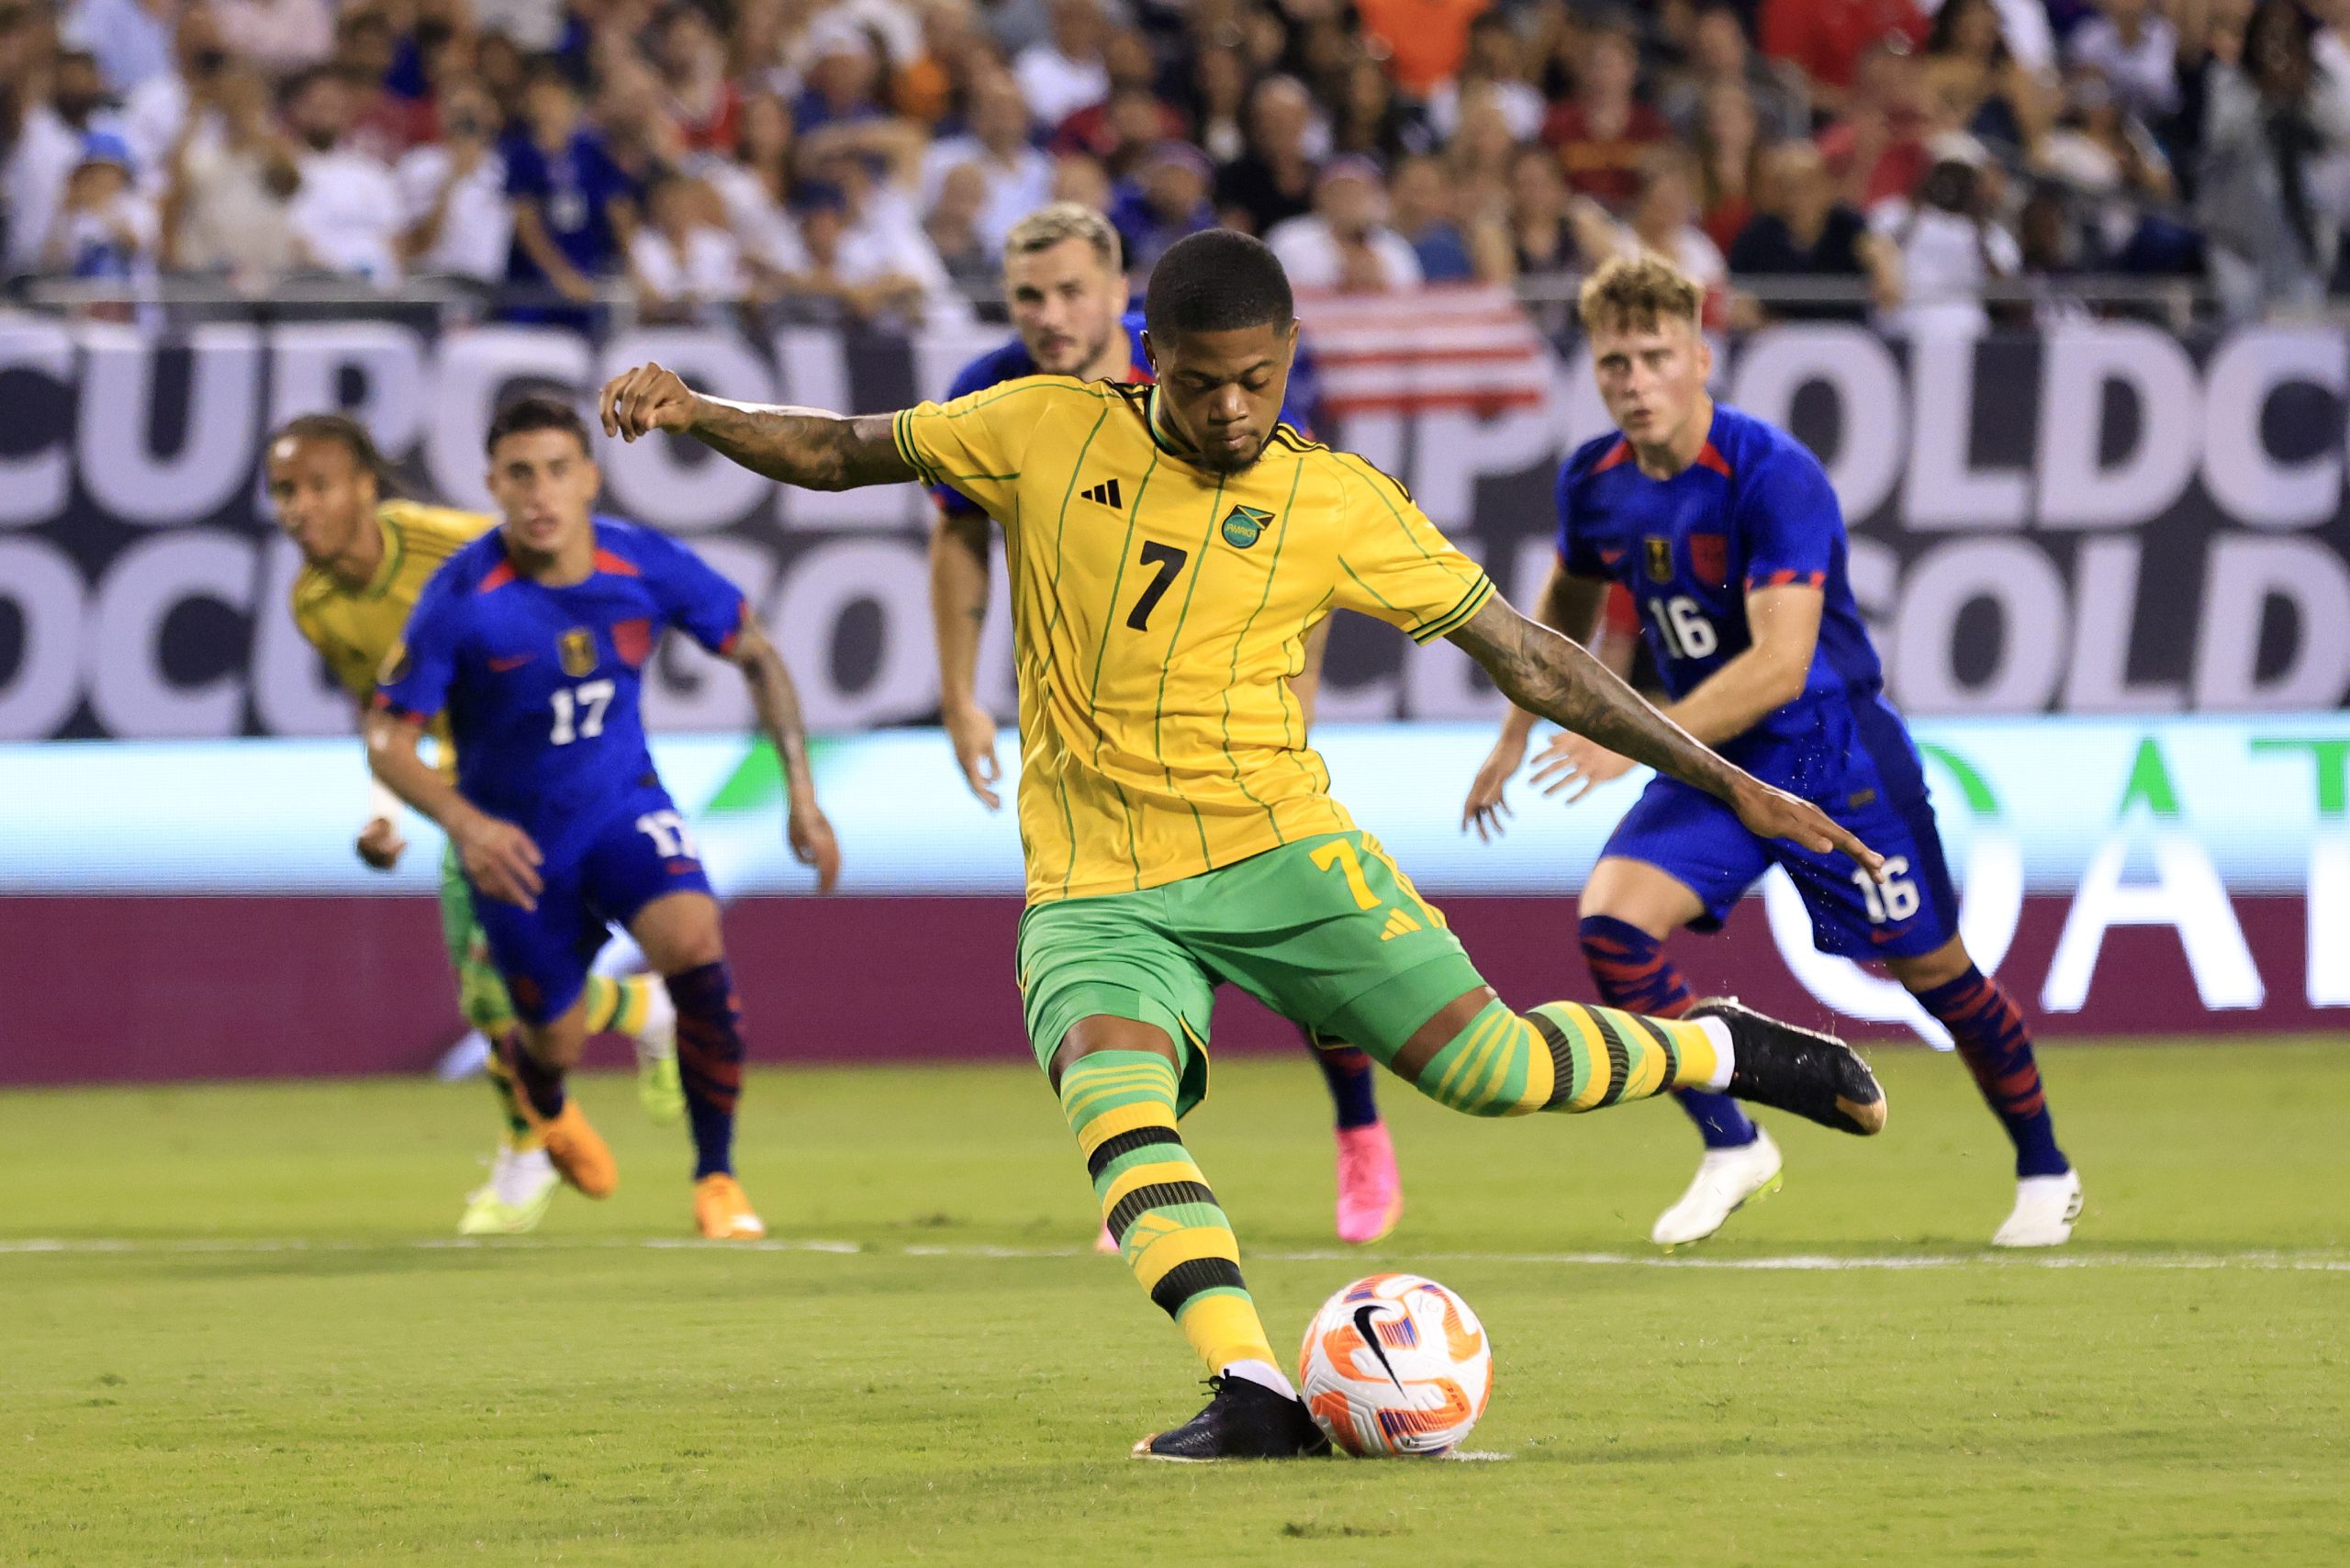 Bailey jogando pela Jamaica (Foto: Justin Casterline/Getty Images)